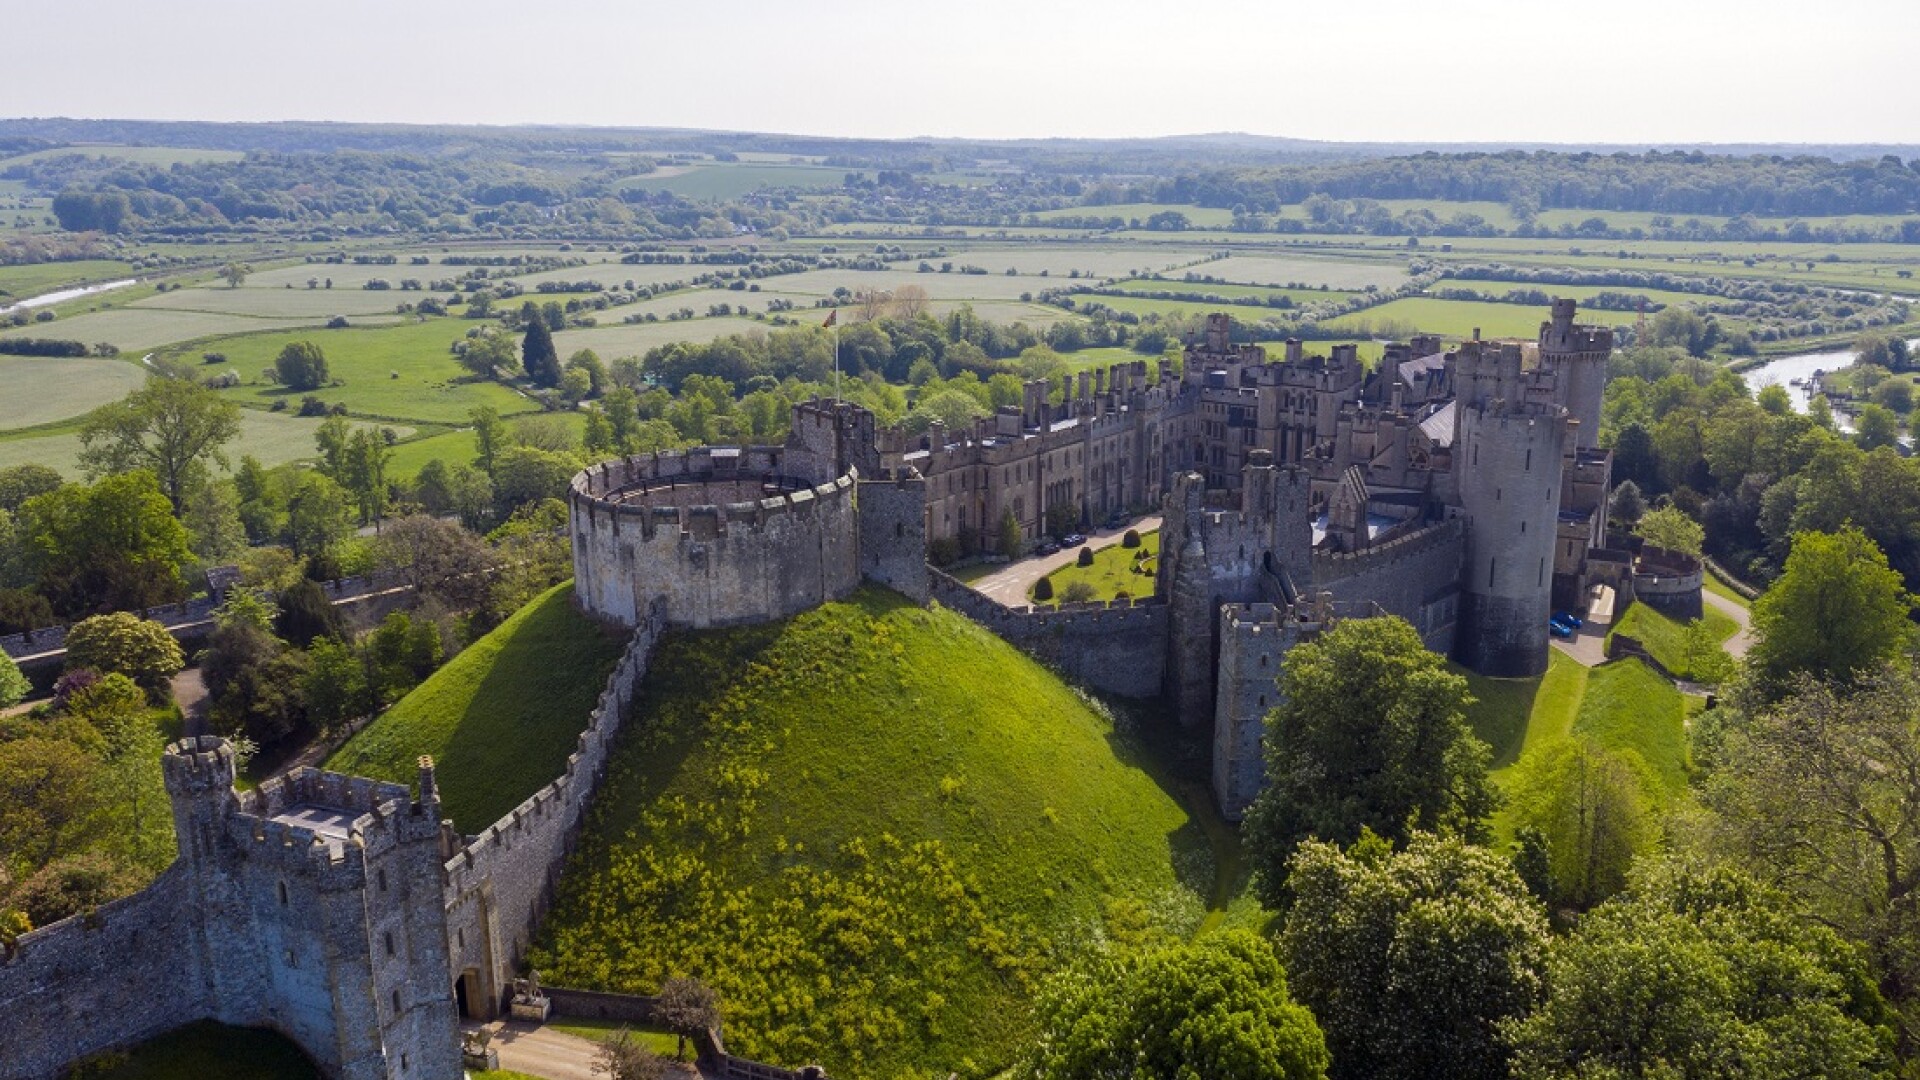 Castelul Arundel a fost jefuit. Hoții au furat obiecte în valoare de peste 1 milion de lire sterline